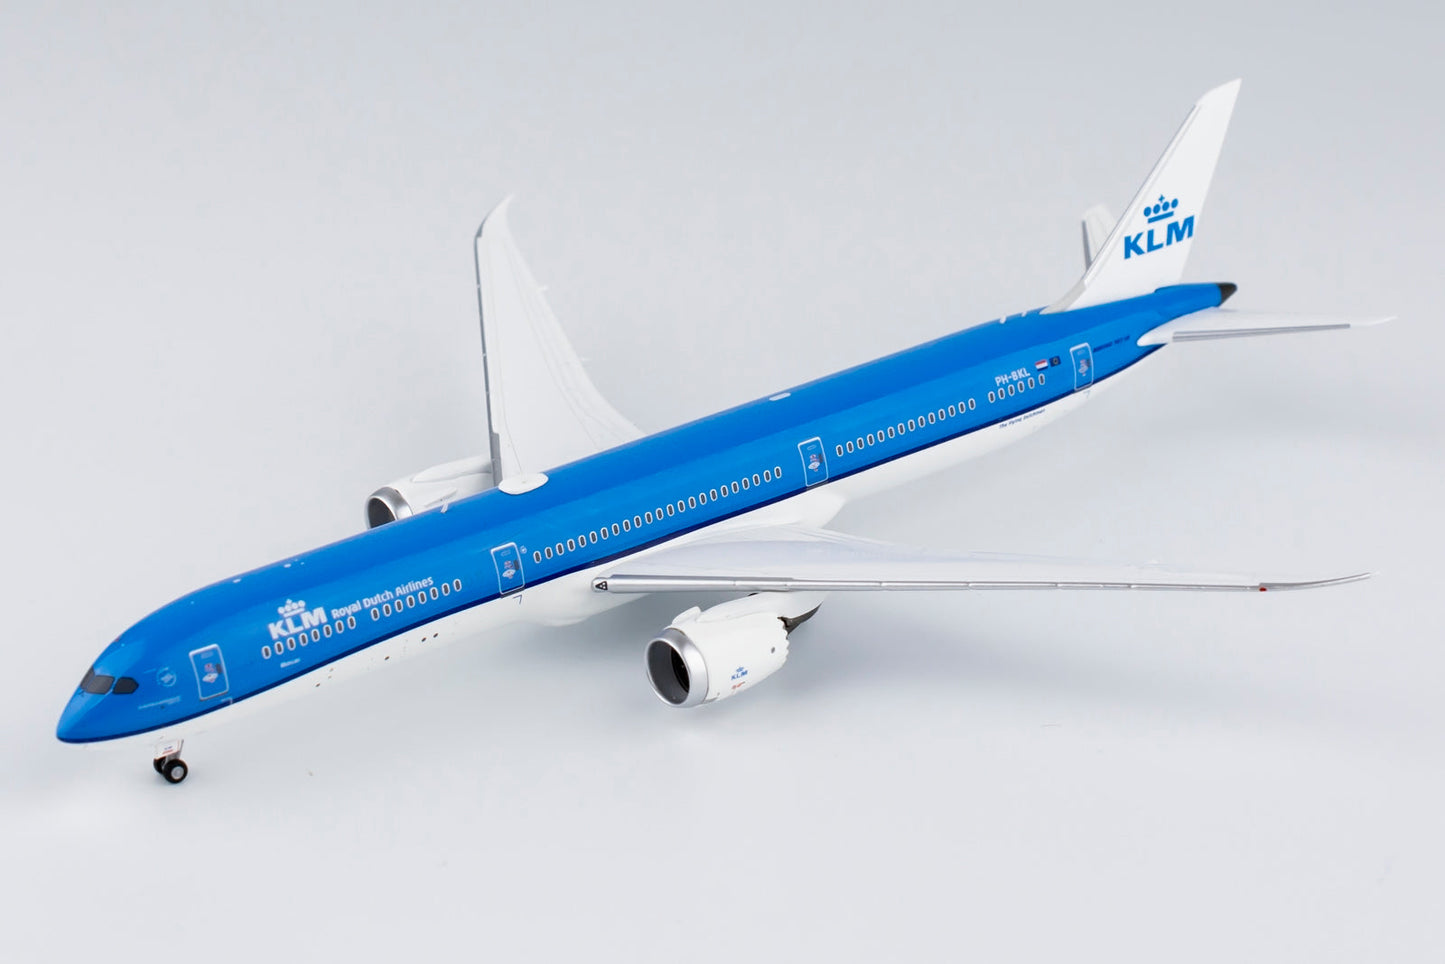 1/400 KLM Royal Dutch Airlines B 787-10 NG Models 56013